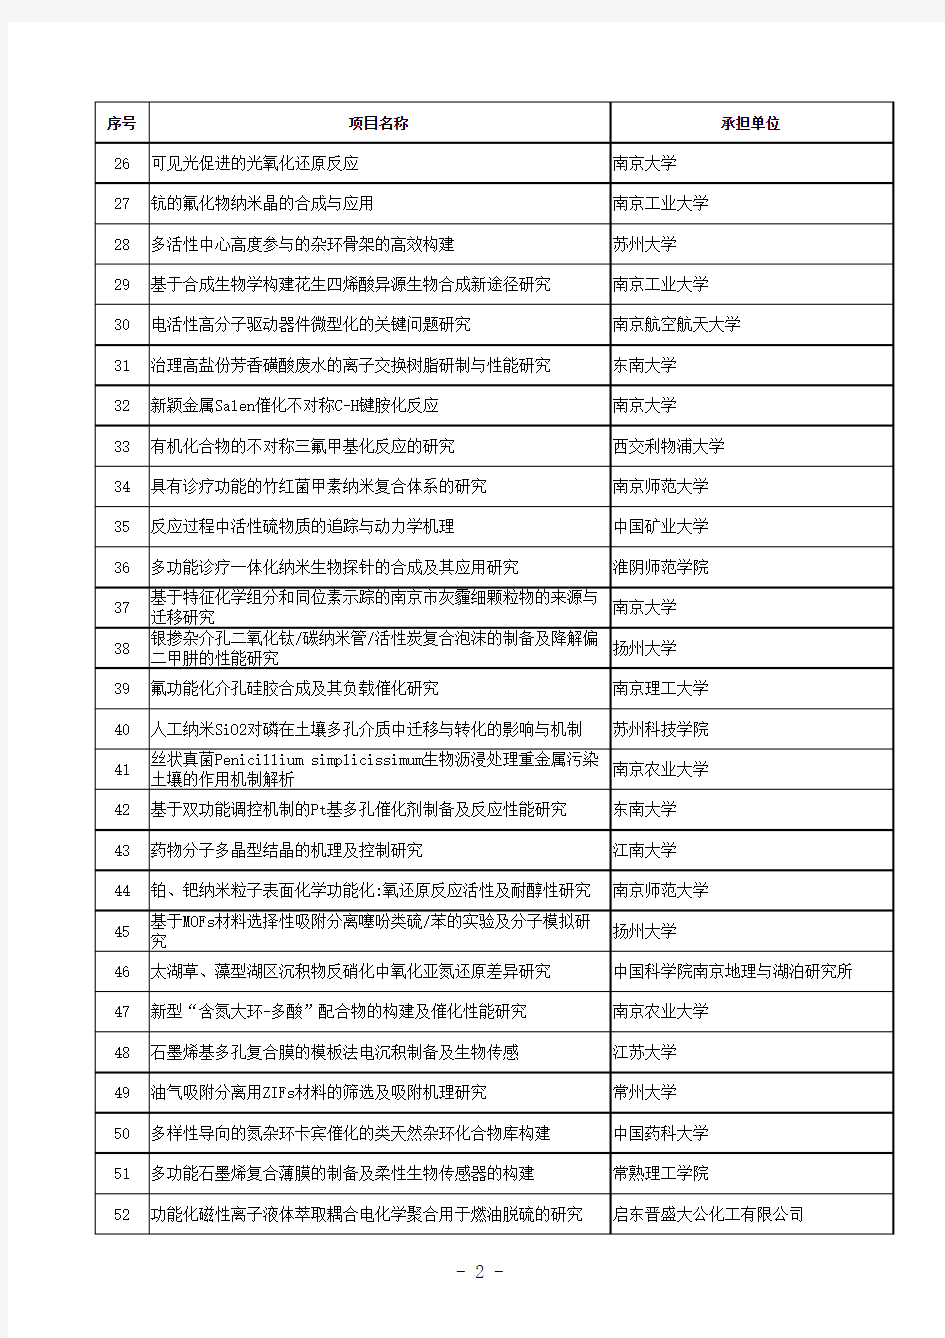 2013年江苏省基础研究计划(自然科学基金)面上拟立项目清单